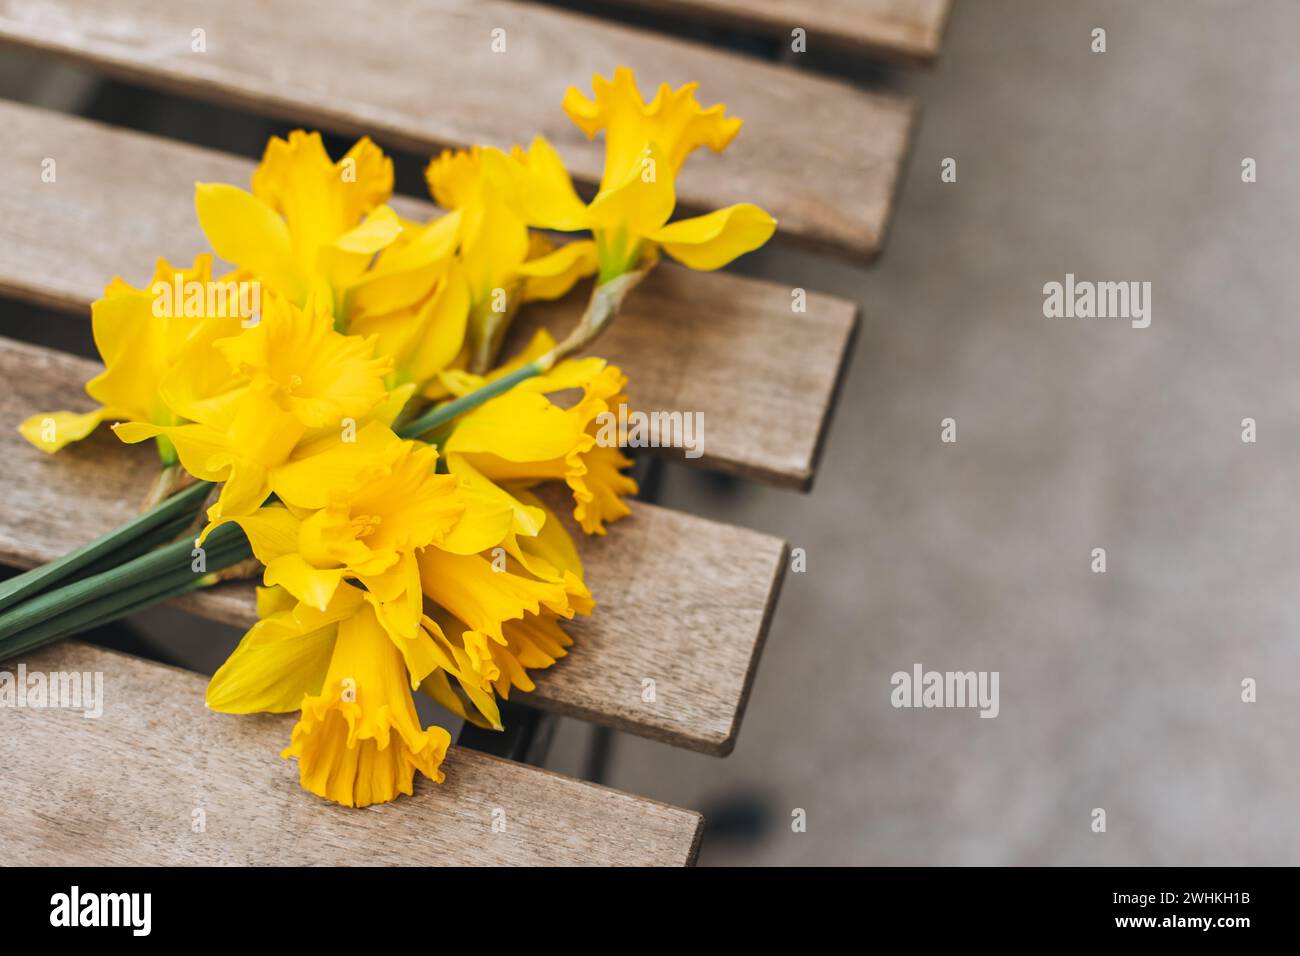 Belles fleurs de jonquille jaune (narcisse) sur une table en bois dans un café de rue. Placer pour le texte. Banque D'Images